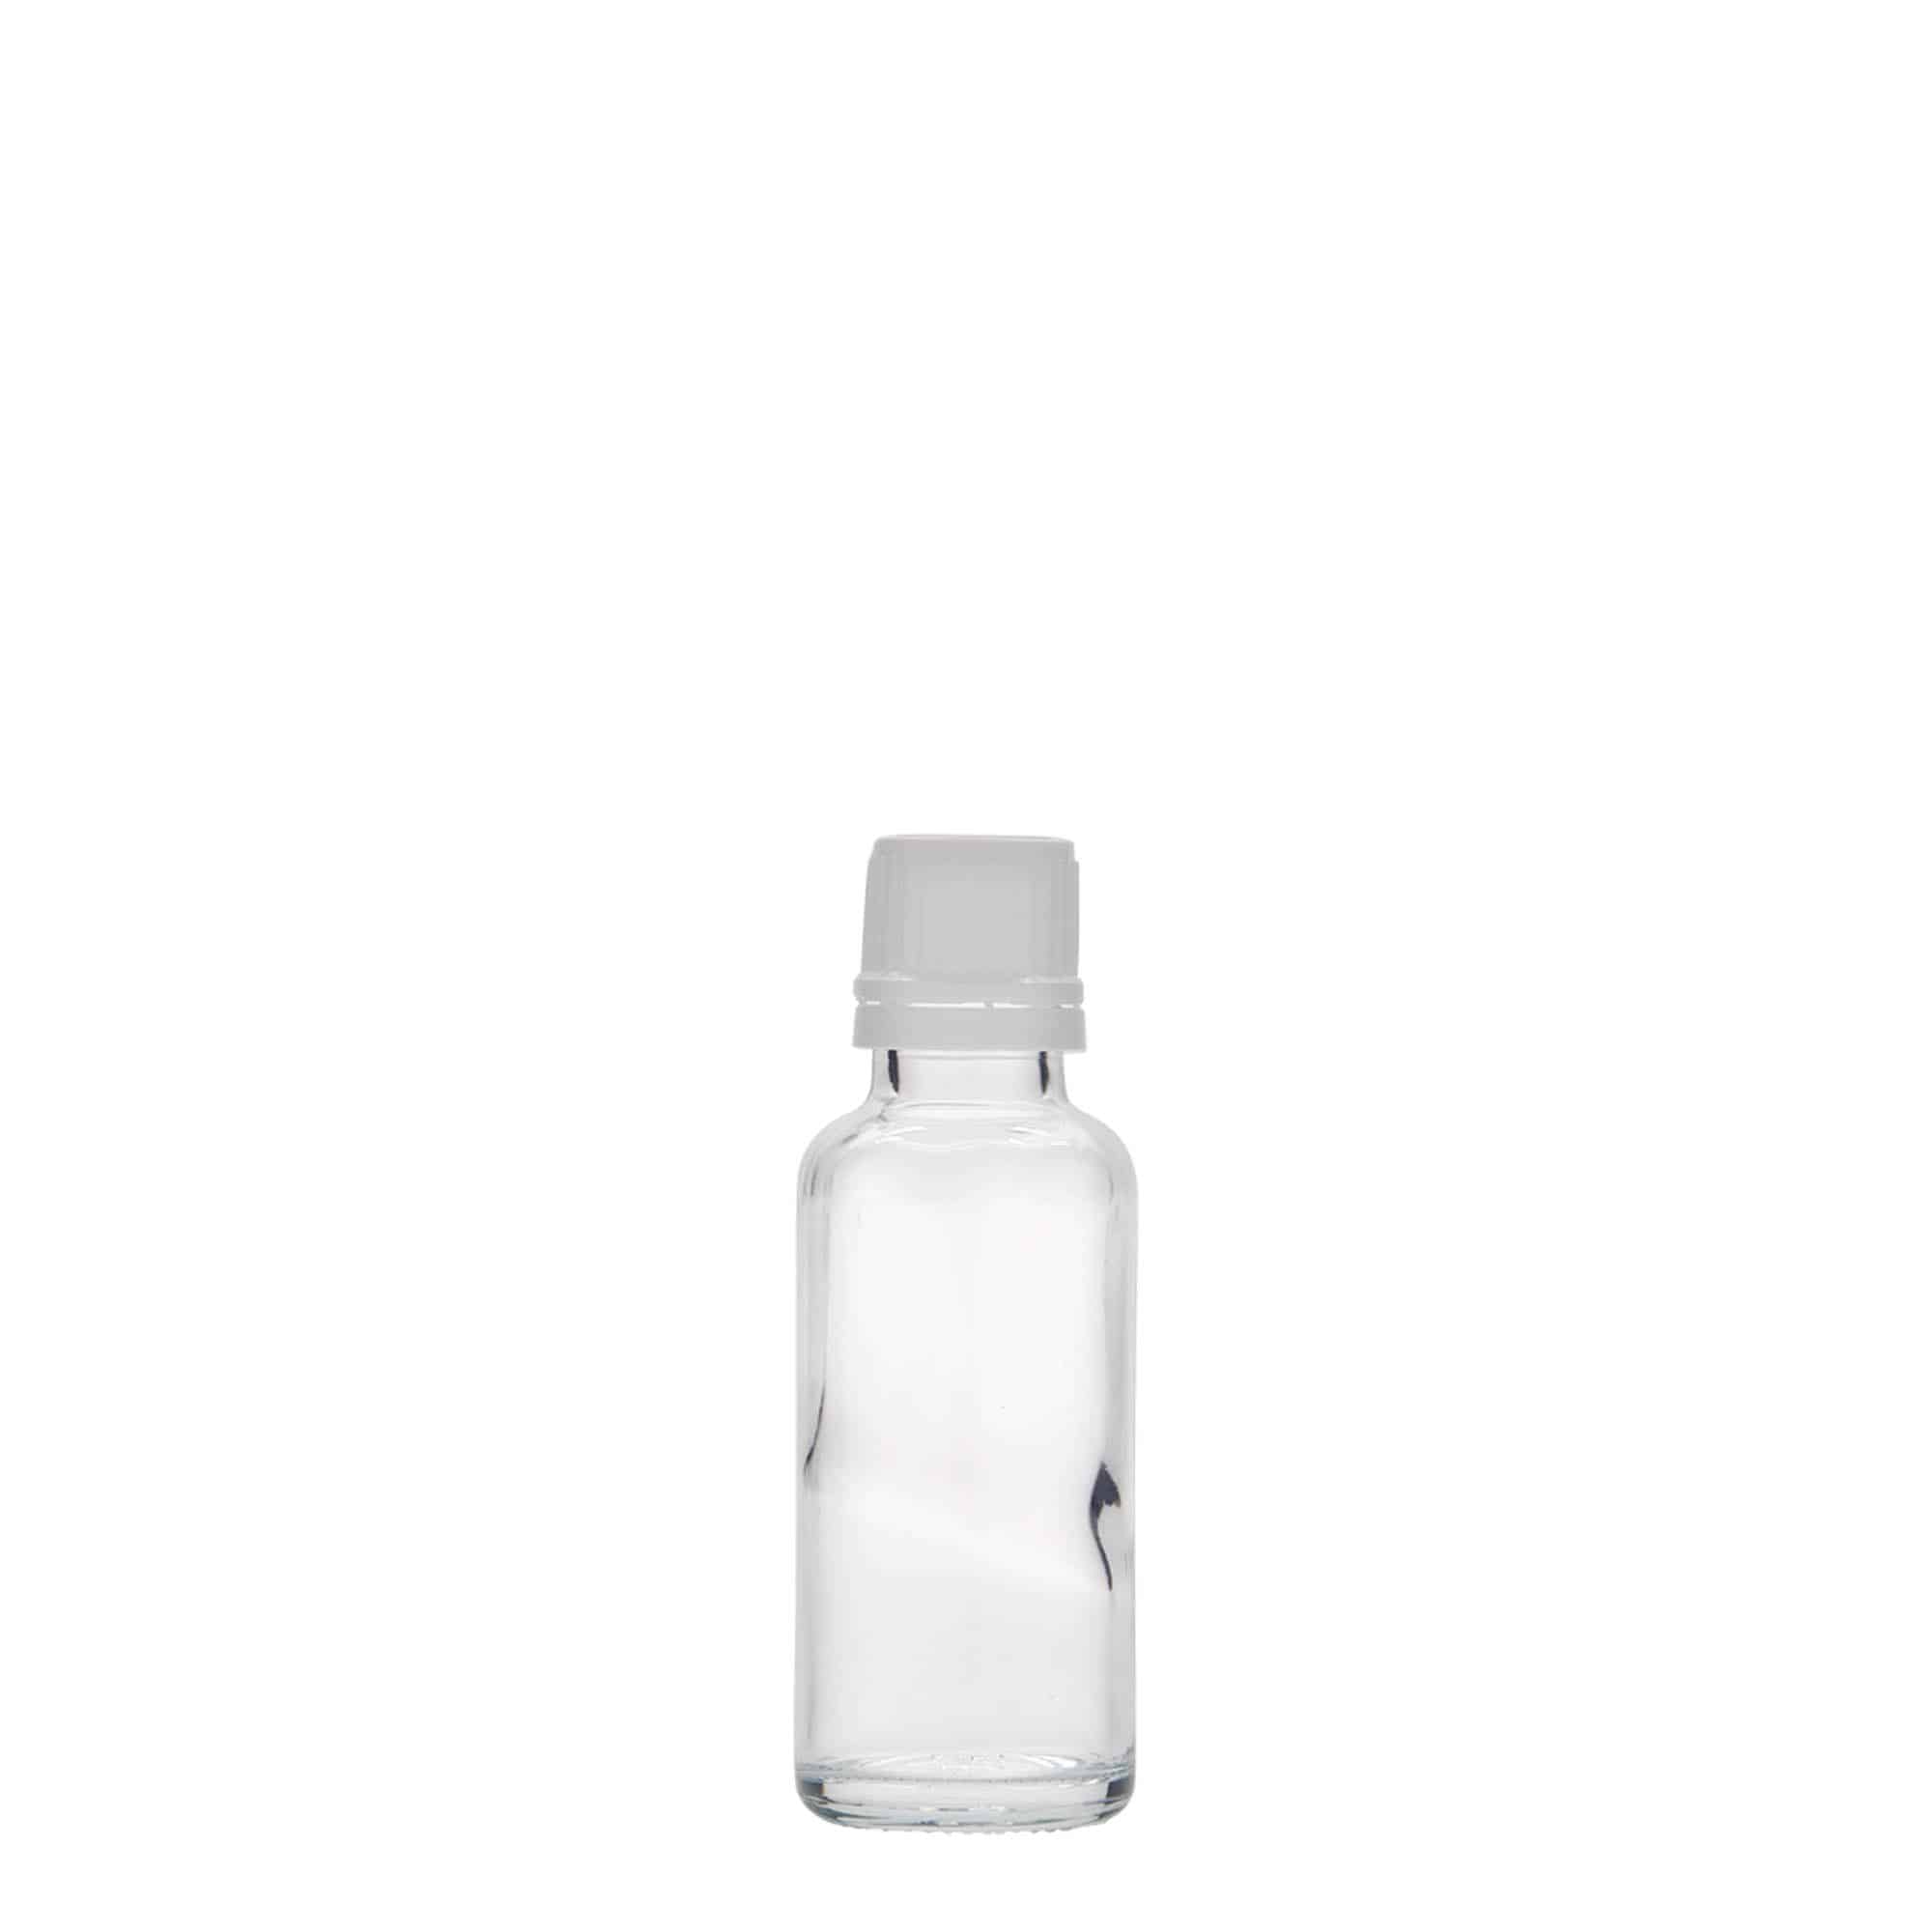 30 ml medicinflaske, glas, åbning: DIN 18